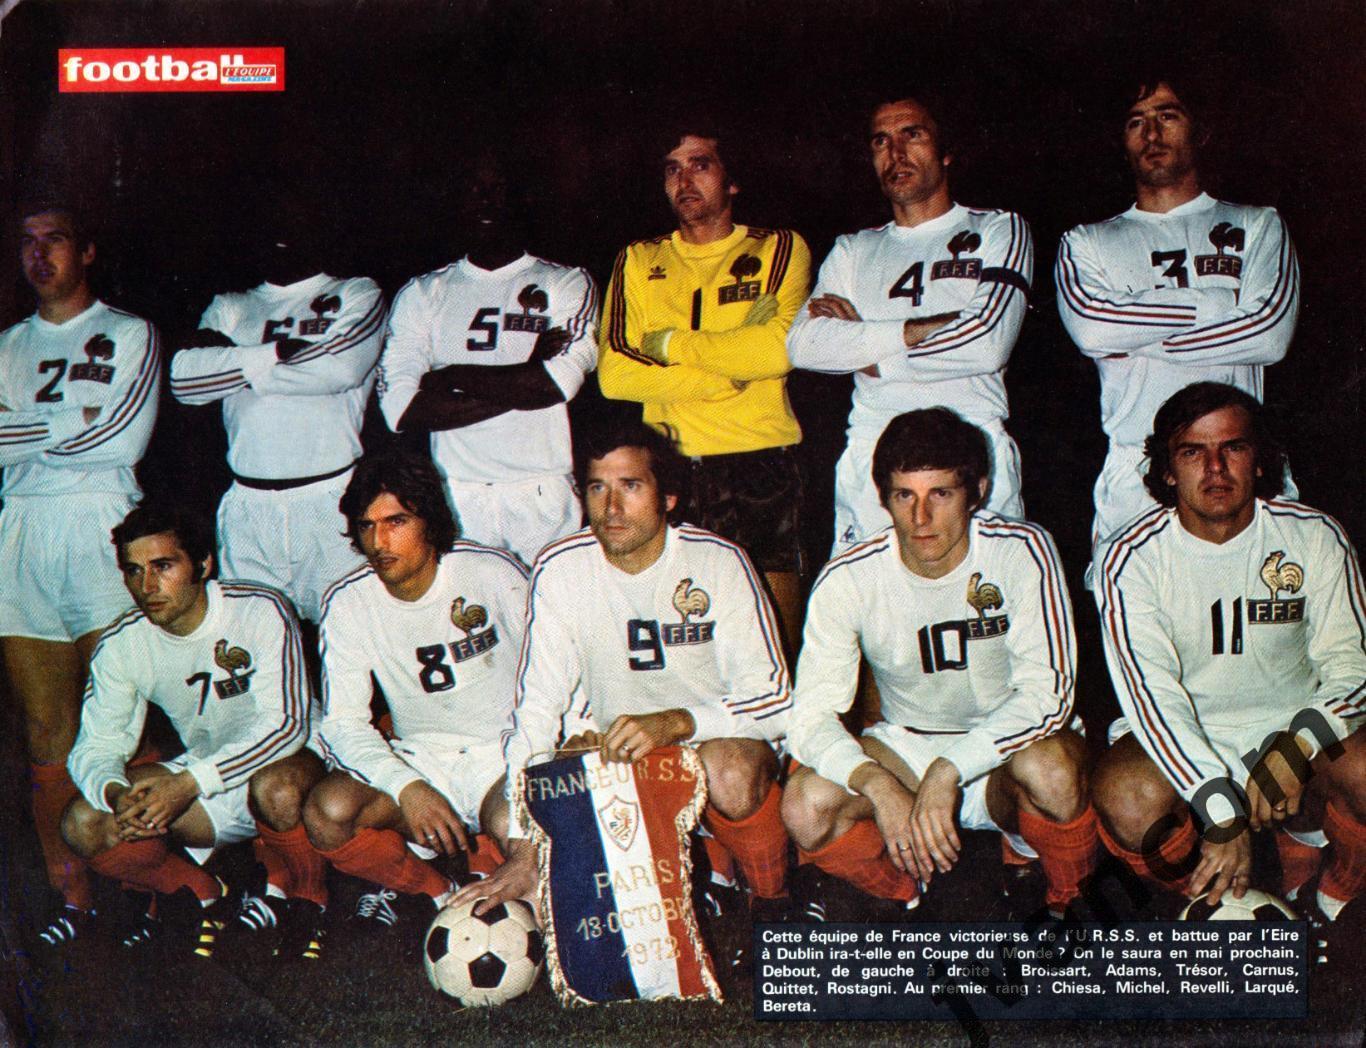 Журнал FOOTBALL MAGAZINE №156 за 1973 год. 1